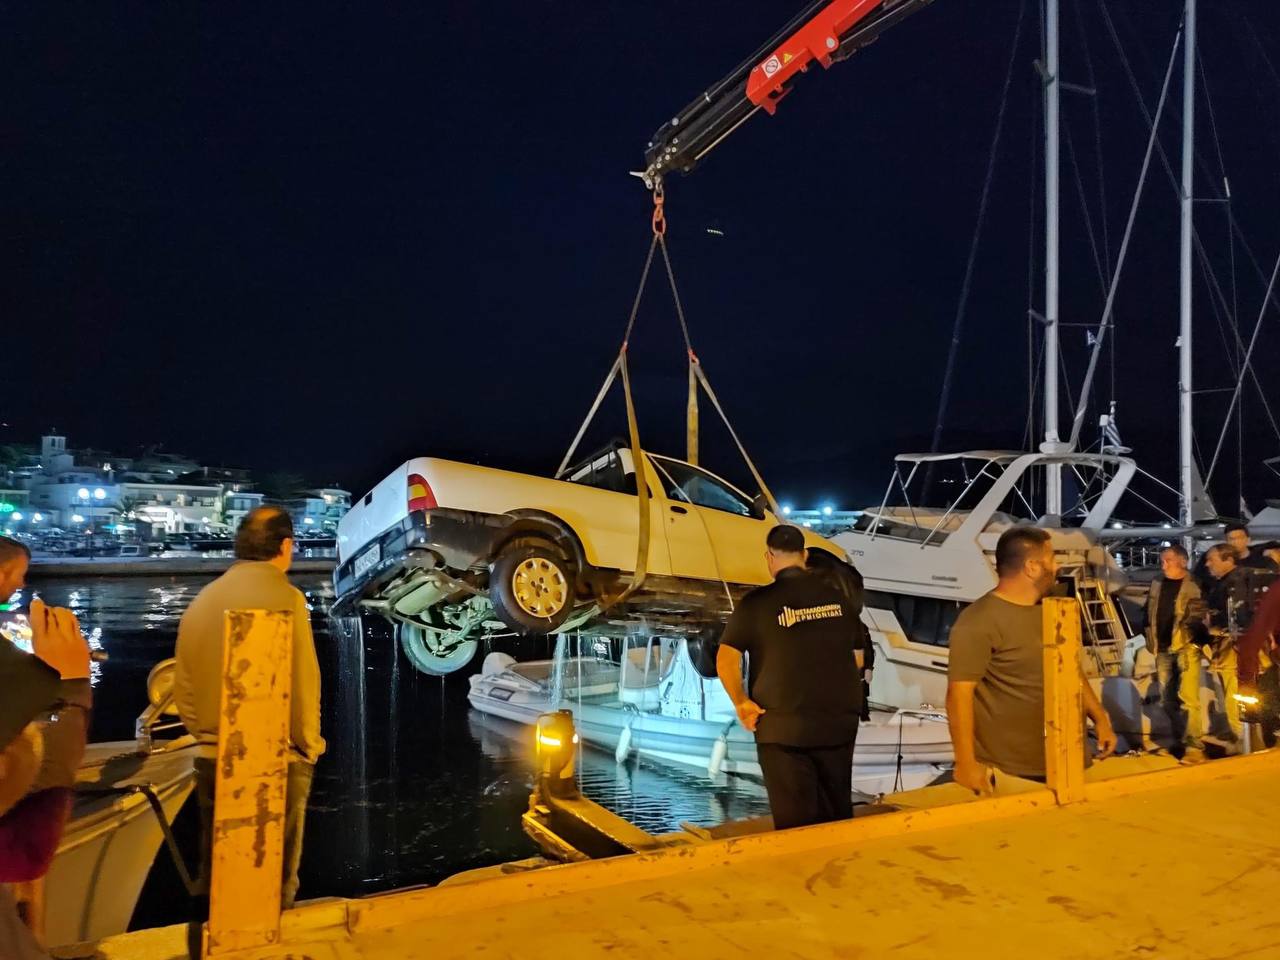 Ατύχημα στην Αργολίδα: Αγροτικό αυτοκίνητο έπεσε στη θάλασσα - Πώς δεν βυθίστηκε